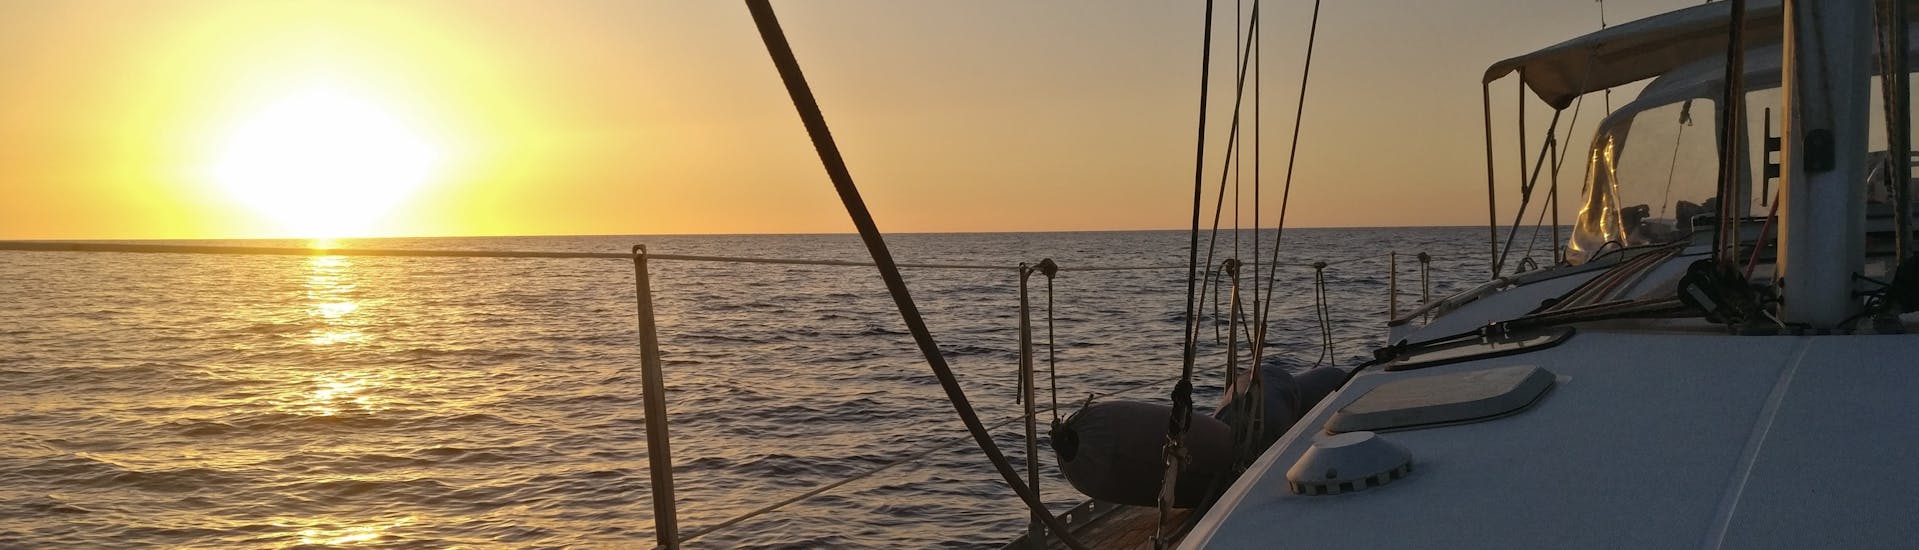 Uitzicht op de zee bij zonsondergang vanaf een boot van Quarantesimo Parallelo Leuca.